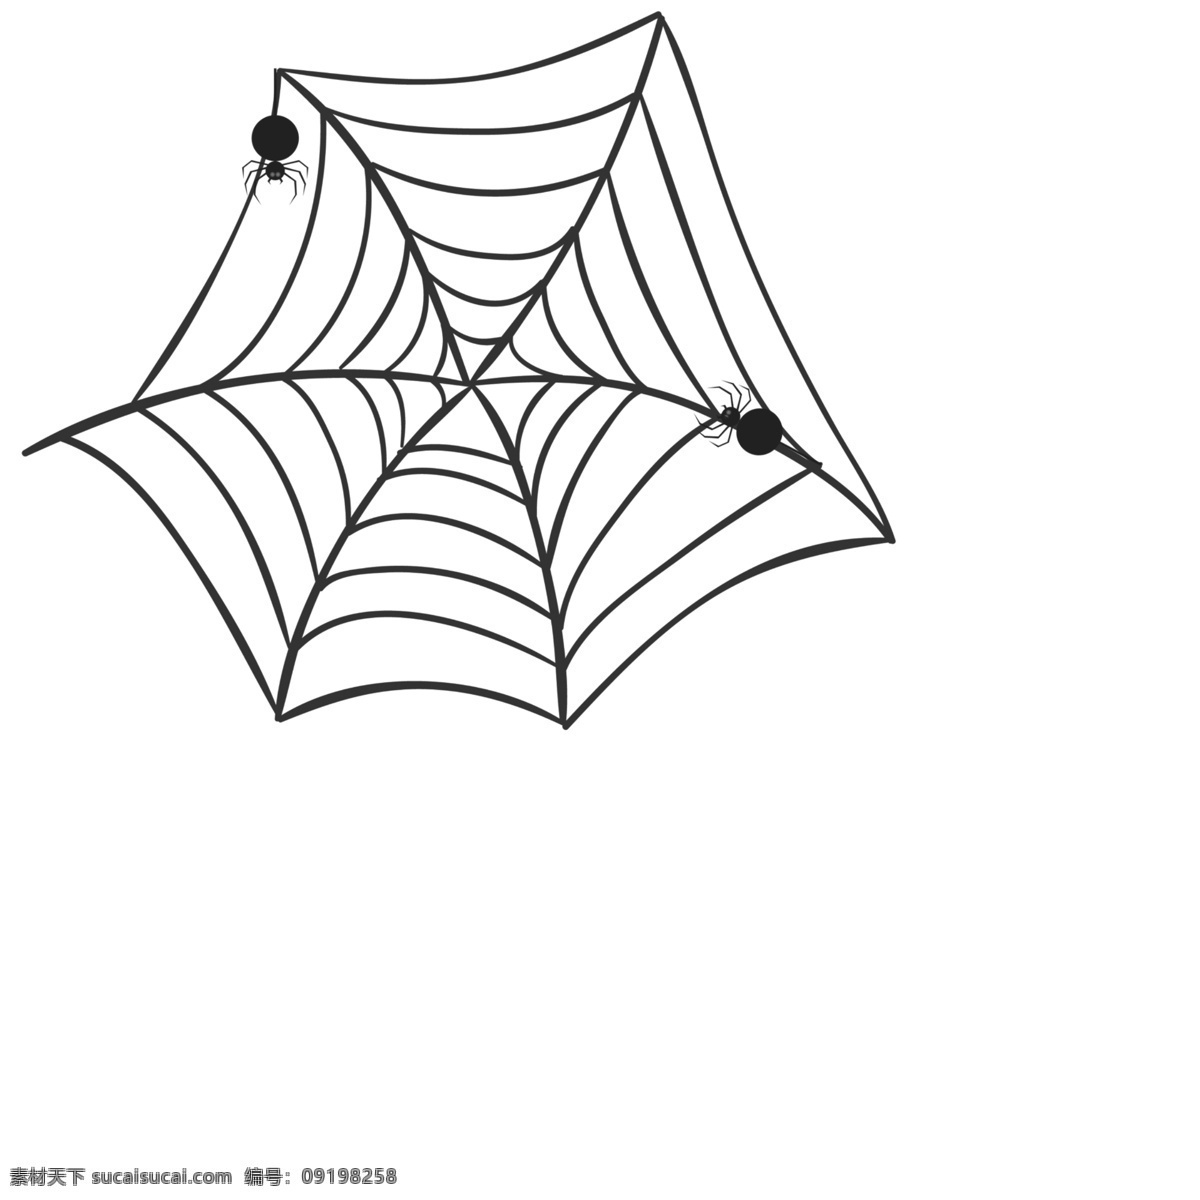 卡通 黑色 蜘蛛网 元素 复活节 蛛网 卡通手绘 手绘蜘蛛网 万圣节 恐怖 卡通蜘蛛网 危险